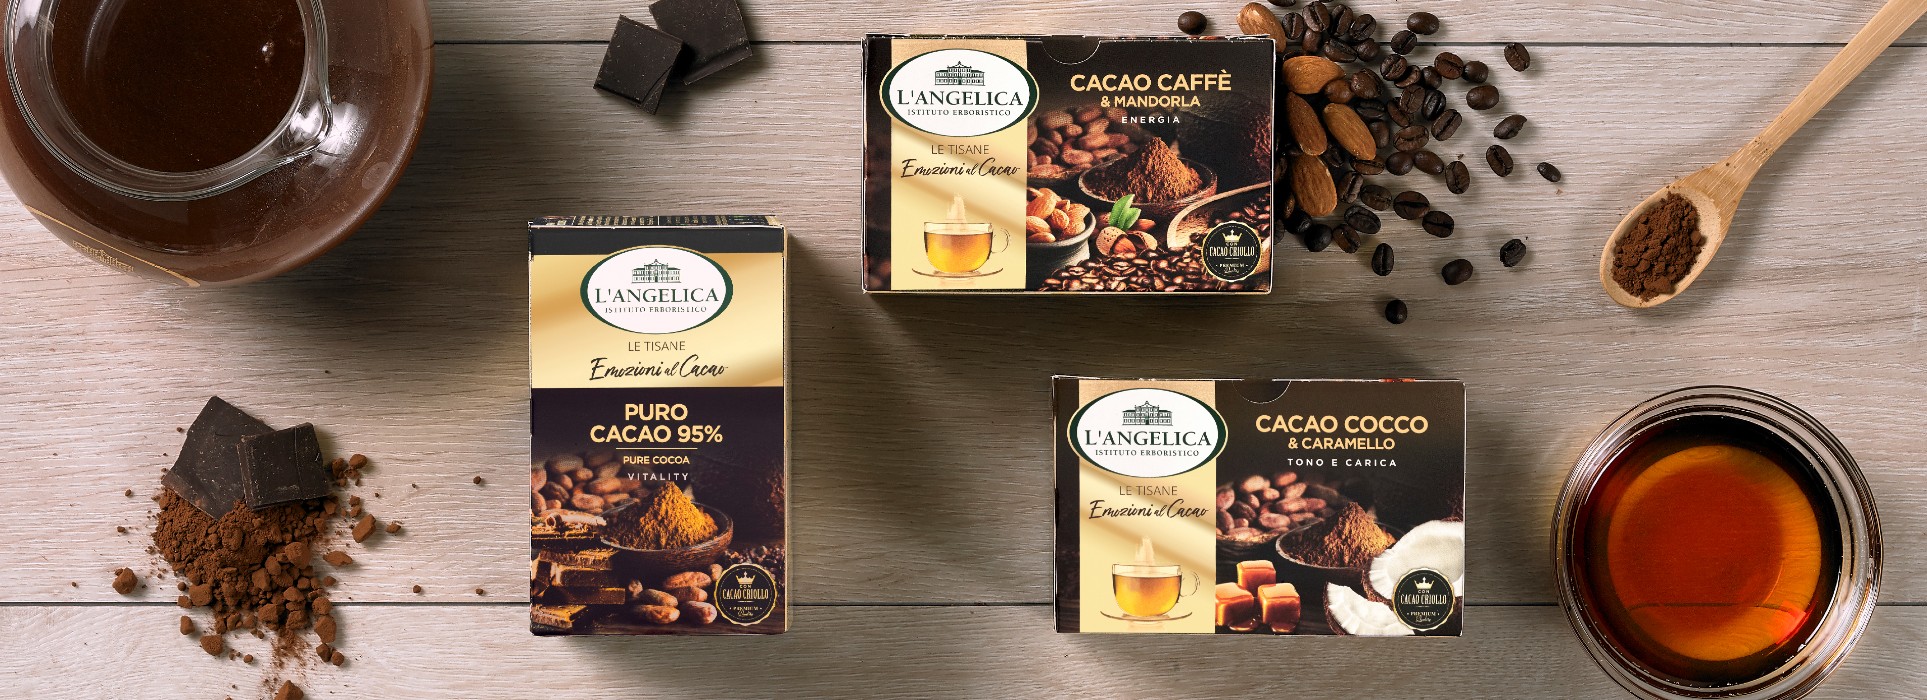 Profumo di caffè, cocco, caramello… le “emozioni al cacao” di L'Angelica -  DUAL Communication - Agenzia di Comunicazione ed Eventi - Milano e Marsala